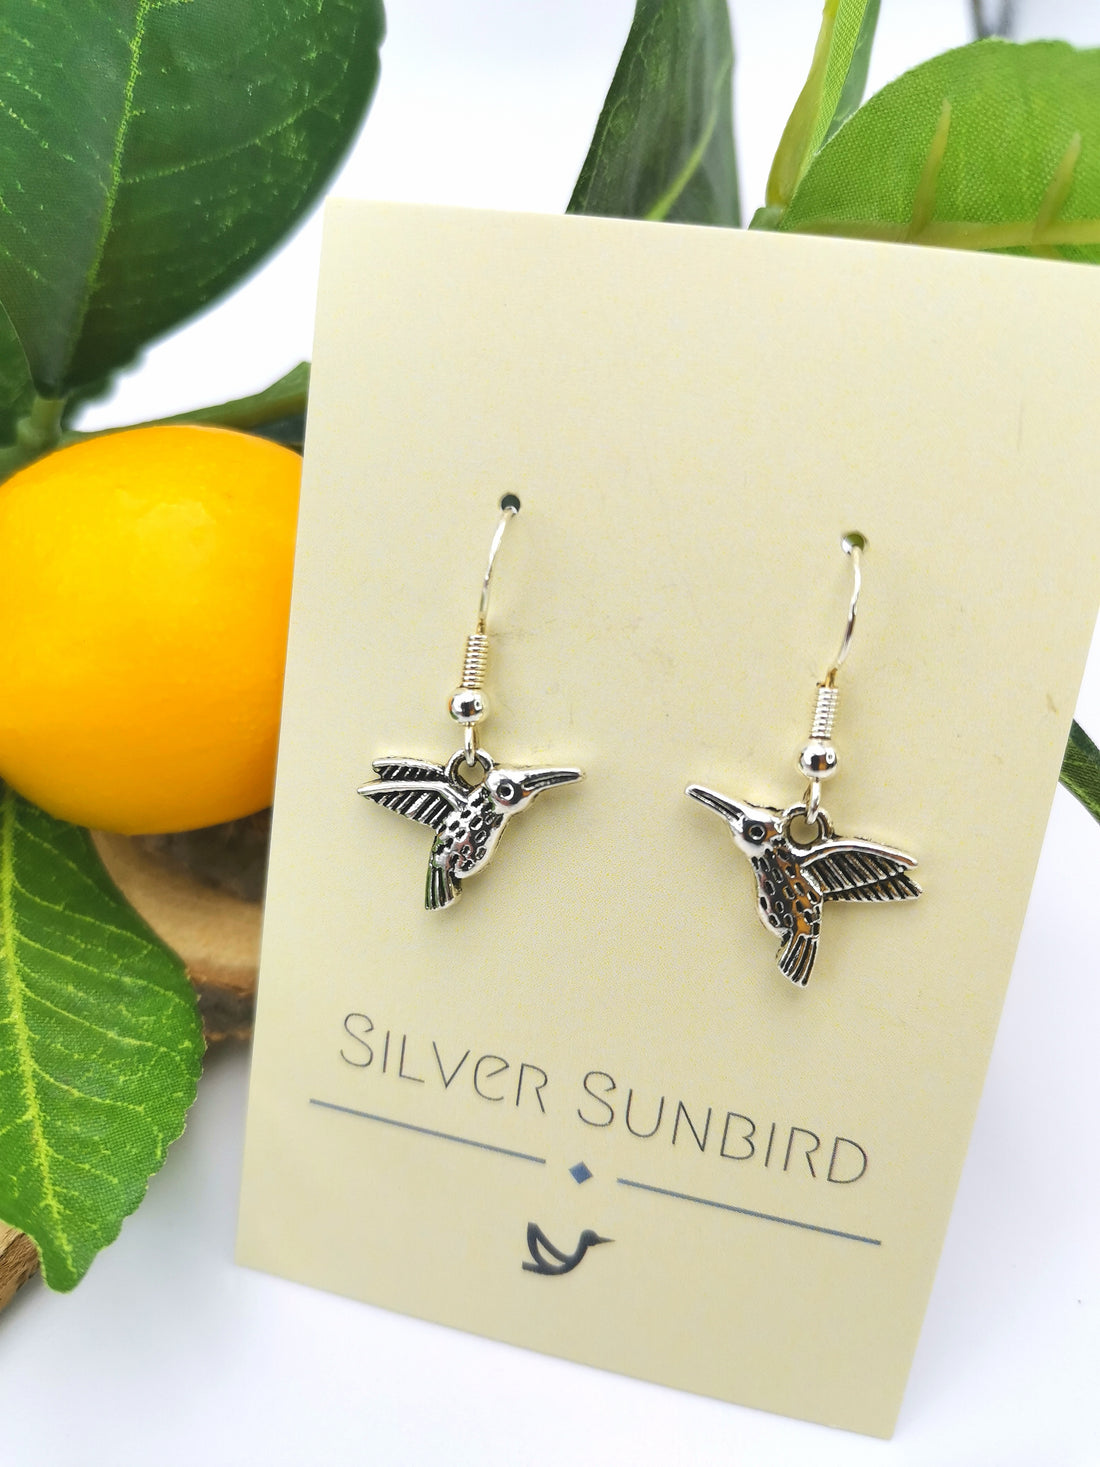 Heartfelt Hummingbird Earrings - Silver Sunbird animal earrings